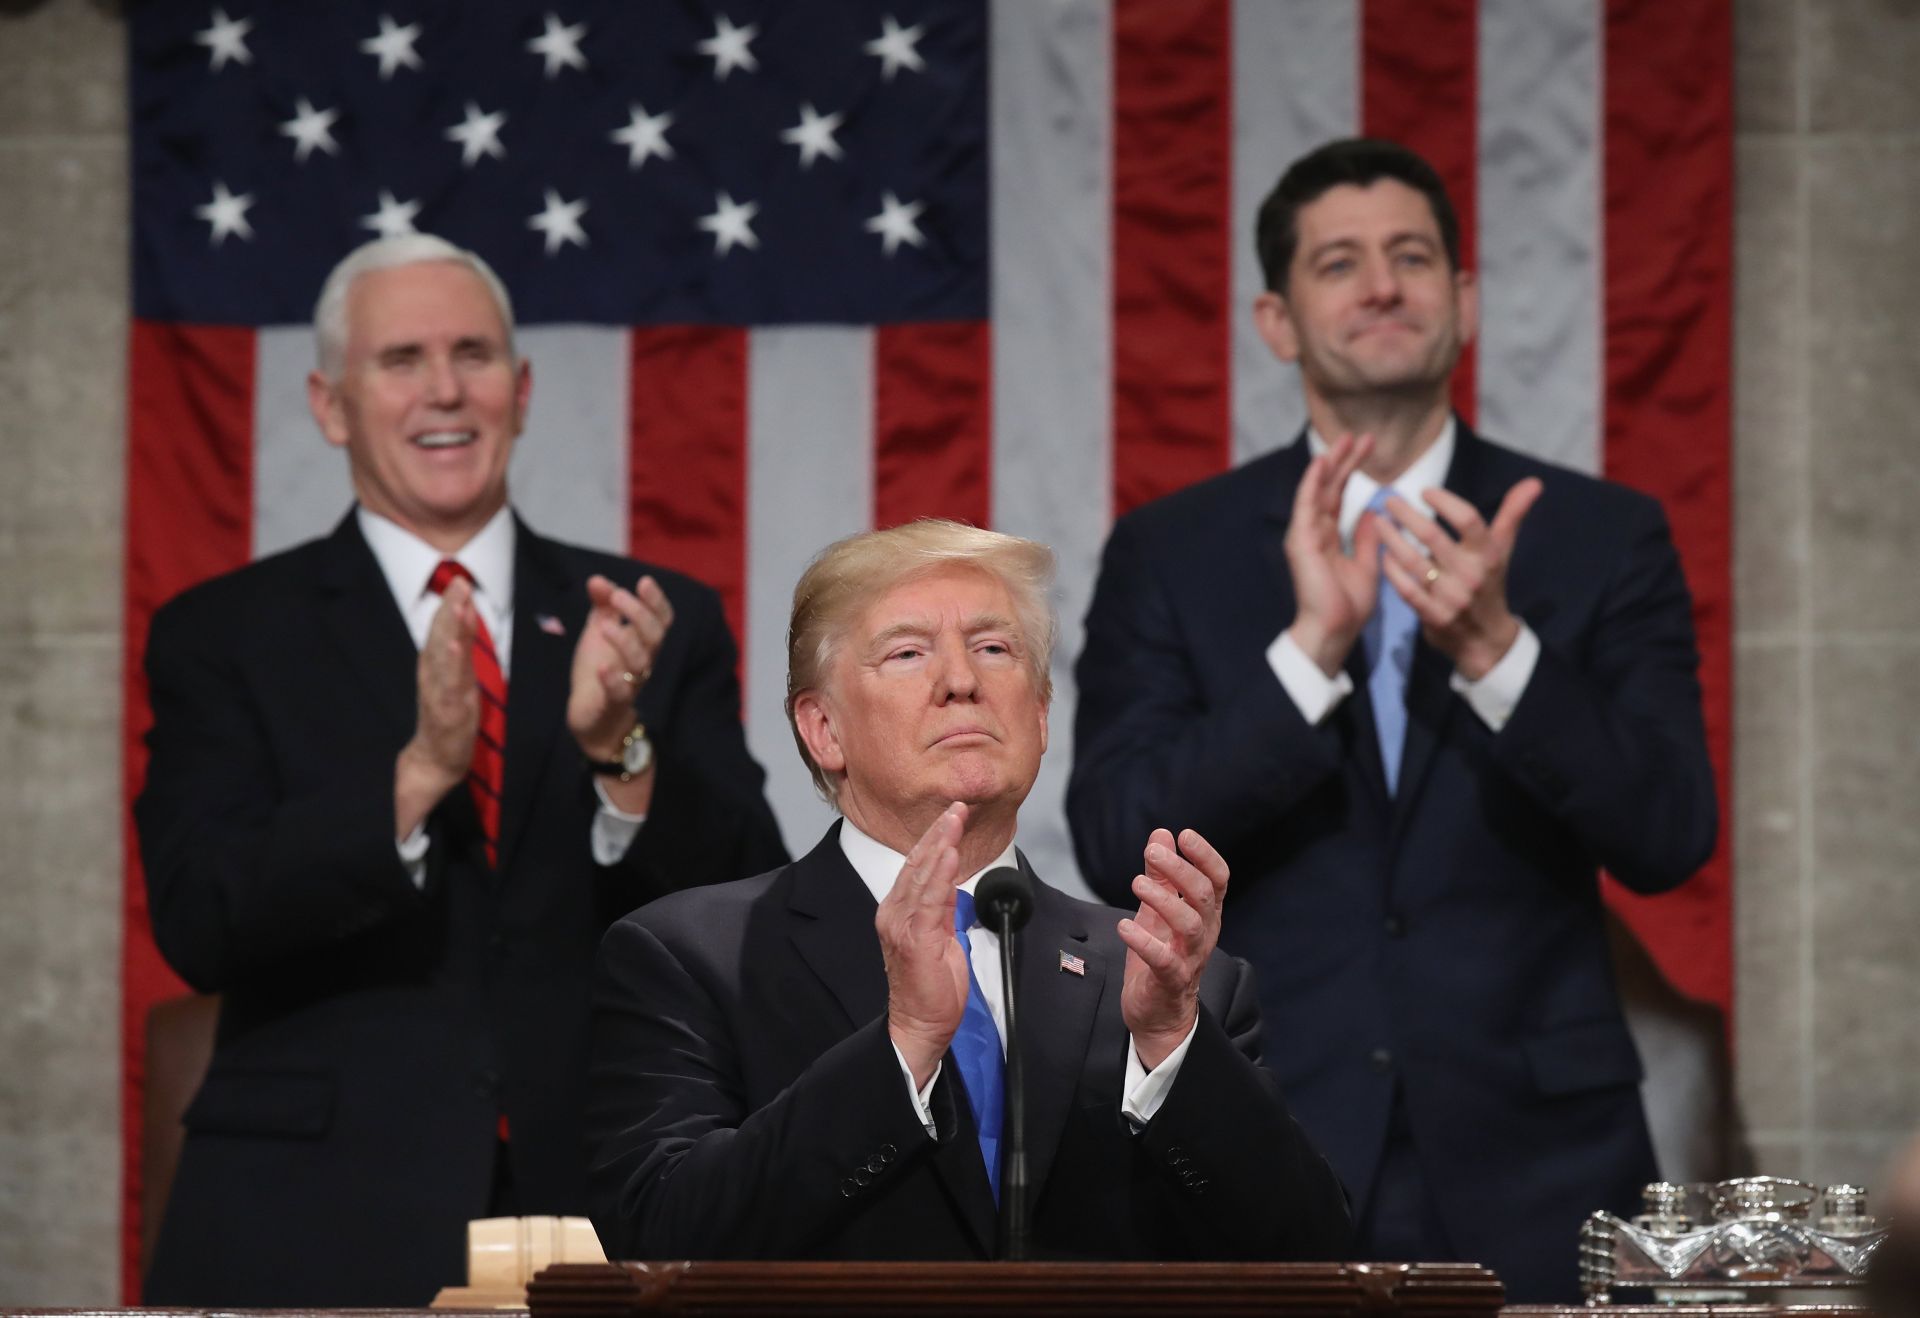 El presidente estadounidense Donald Trump (c) pronuncia hoy, martes 30 de enero de 2018, su discurso sobre el Estado de la Unión ante el Congreso, acompañado por el vicepresidente Mike Pence (i) y el presidente de la Cámara de Representantes Paul Ryan (d), en Washington (Estados Unidos).